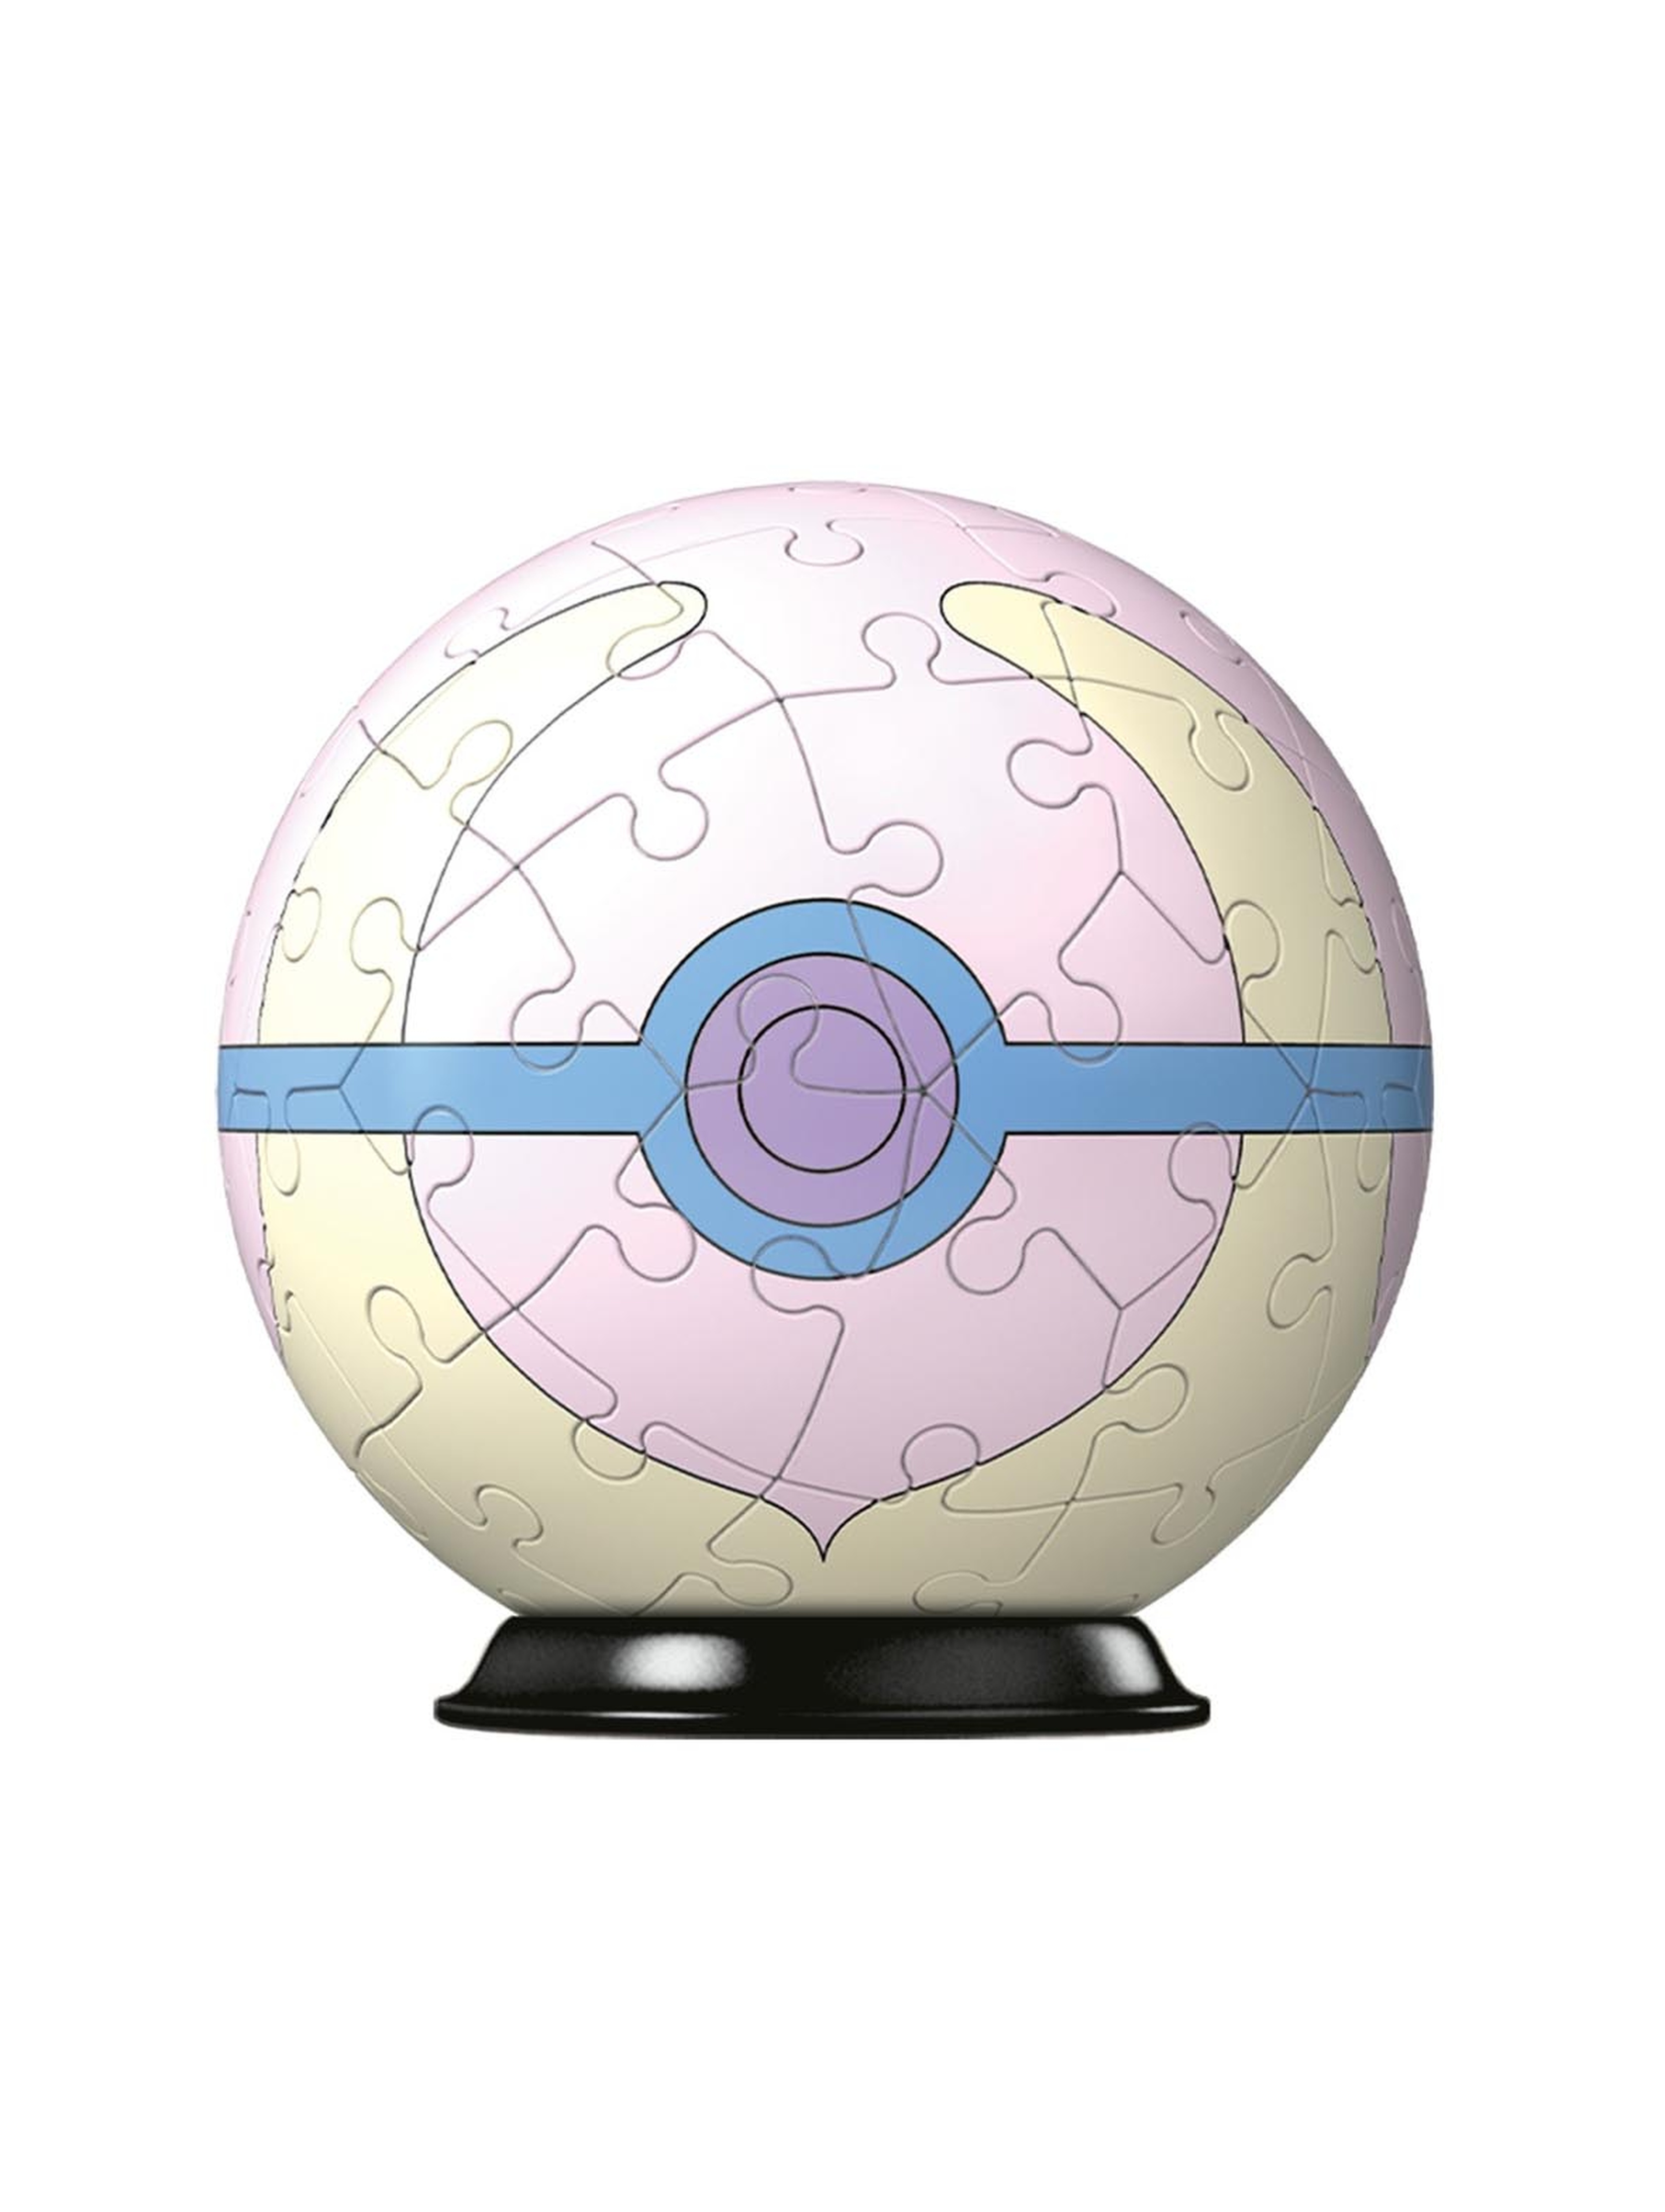 Puzzle 3D Kula Pokemon Heal Ball